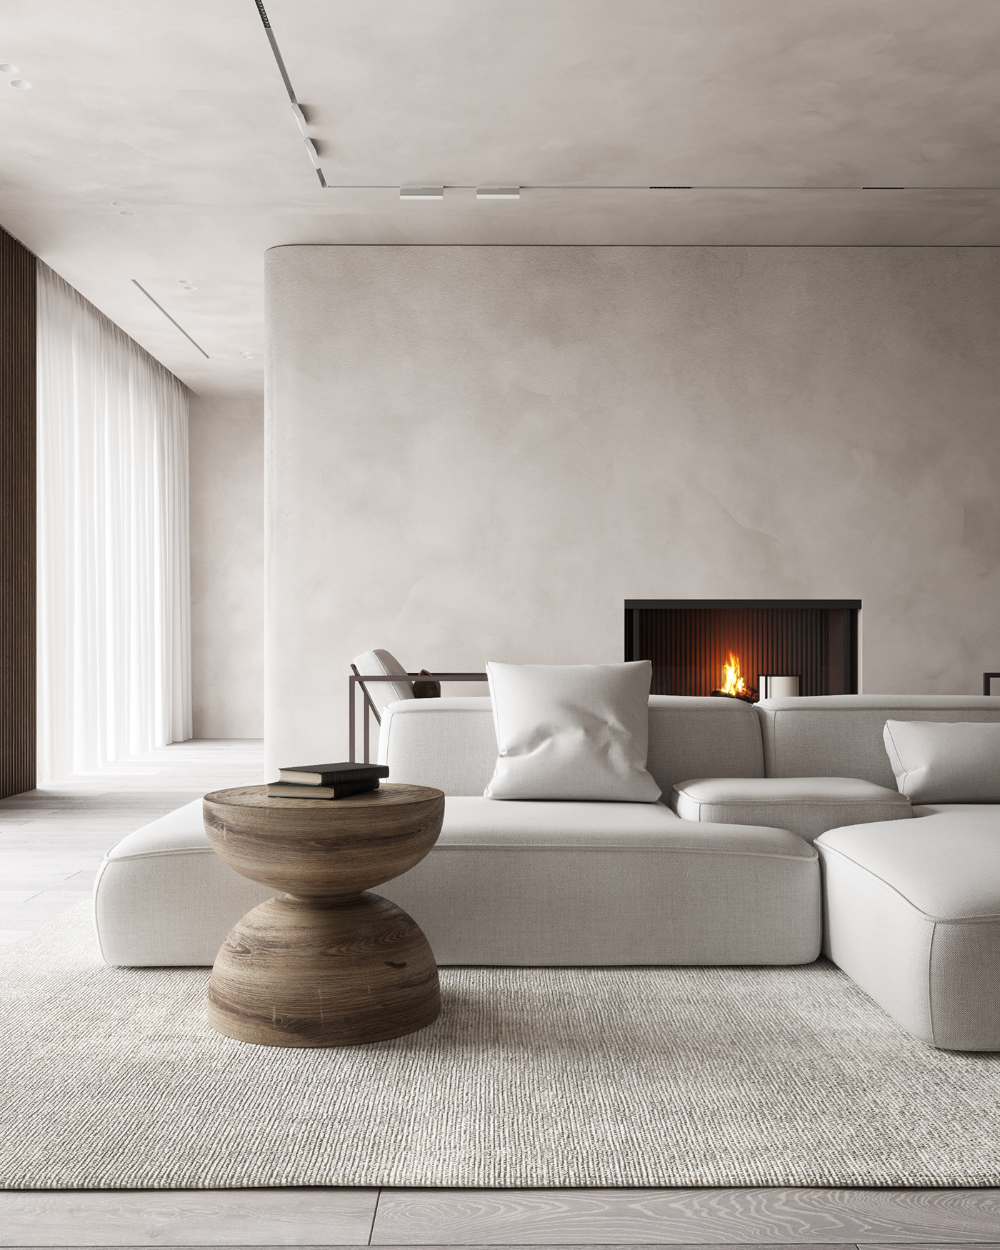 Japanese Aesthetic Living Room in Modern Design